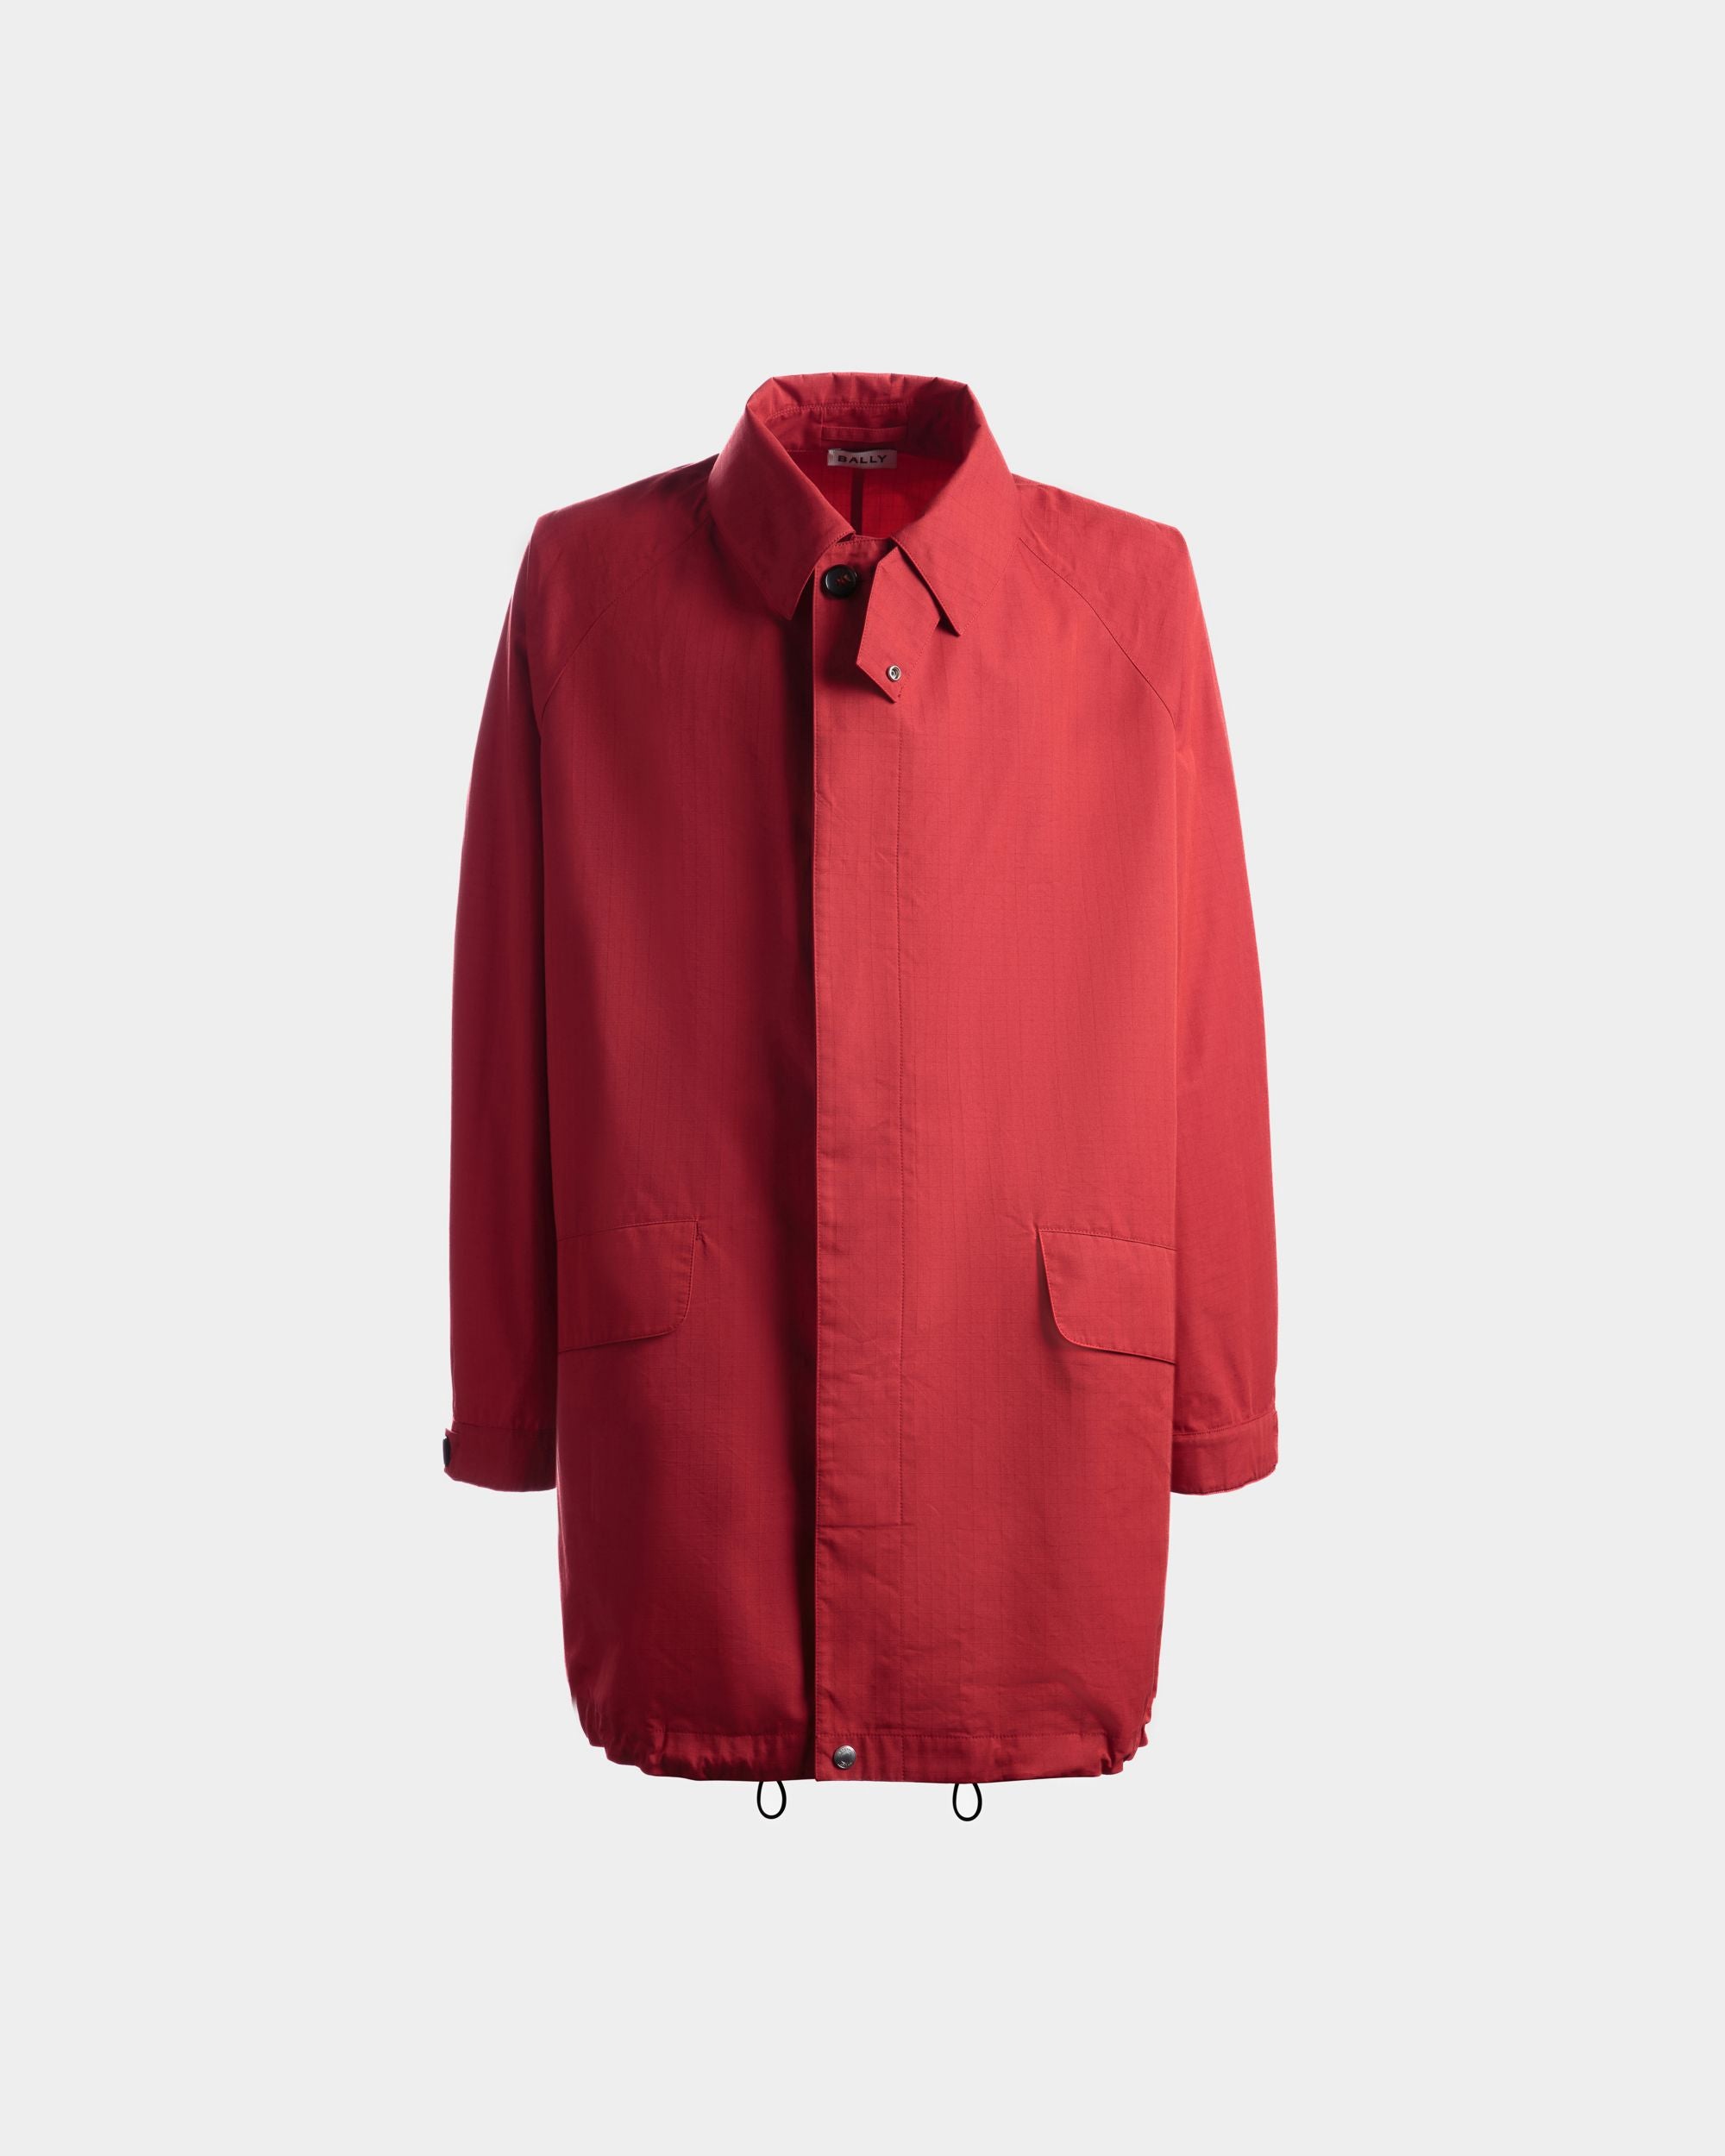 Mantel für Herren aus Nylon in Candy Red | Bally | Still Life Vorderseite